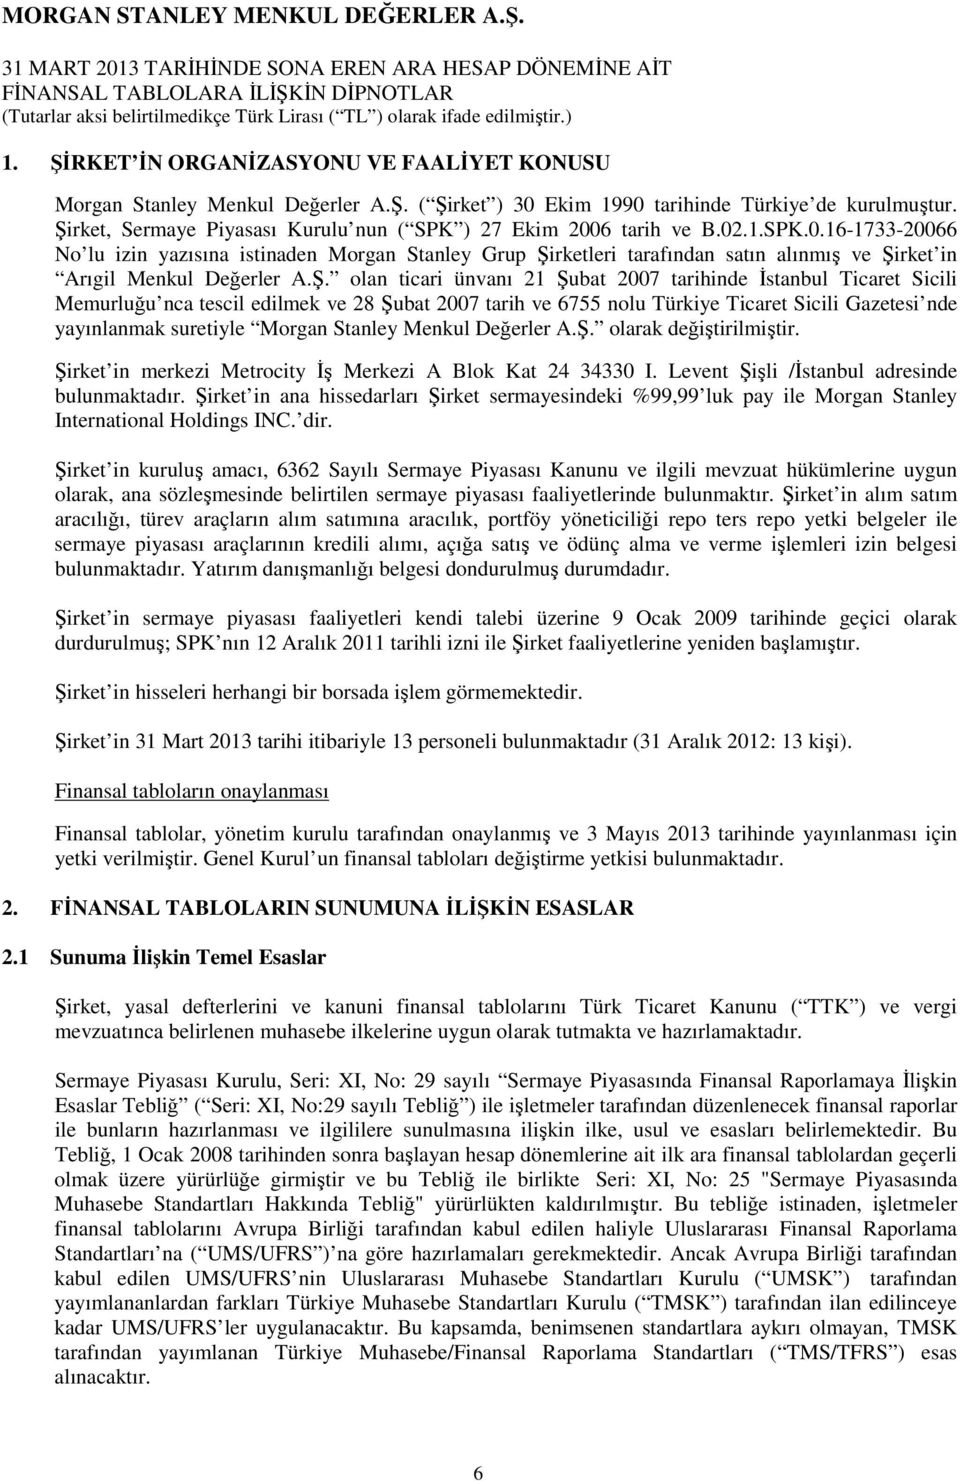 Ş. olan ticari ünvanı 21 Şubat 2007 tarihinde Đstanbul Ticaret Sicili Memurluğu nca tescil edilmek ve 28 Şubat 2007 tarih ve 6755 nolu Türkiye Ticaret Sicili Gazetesi nde yayınlanmak suretiyle Morgan